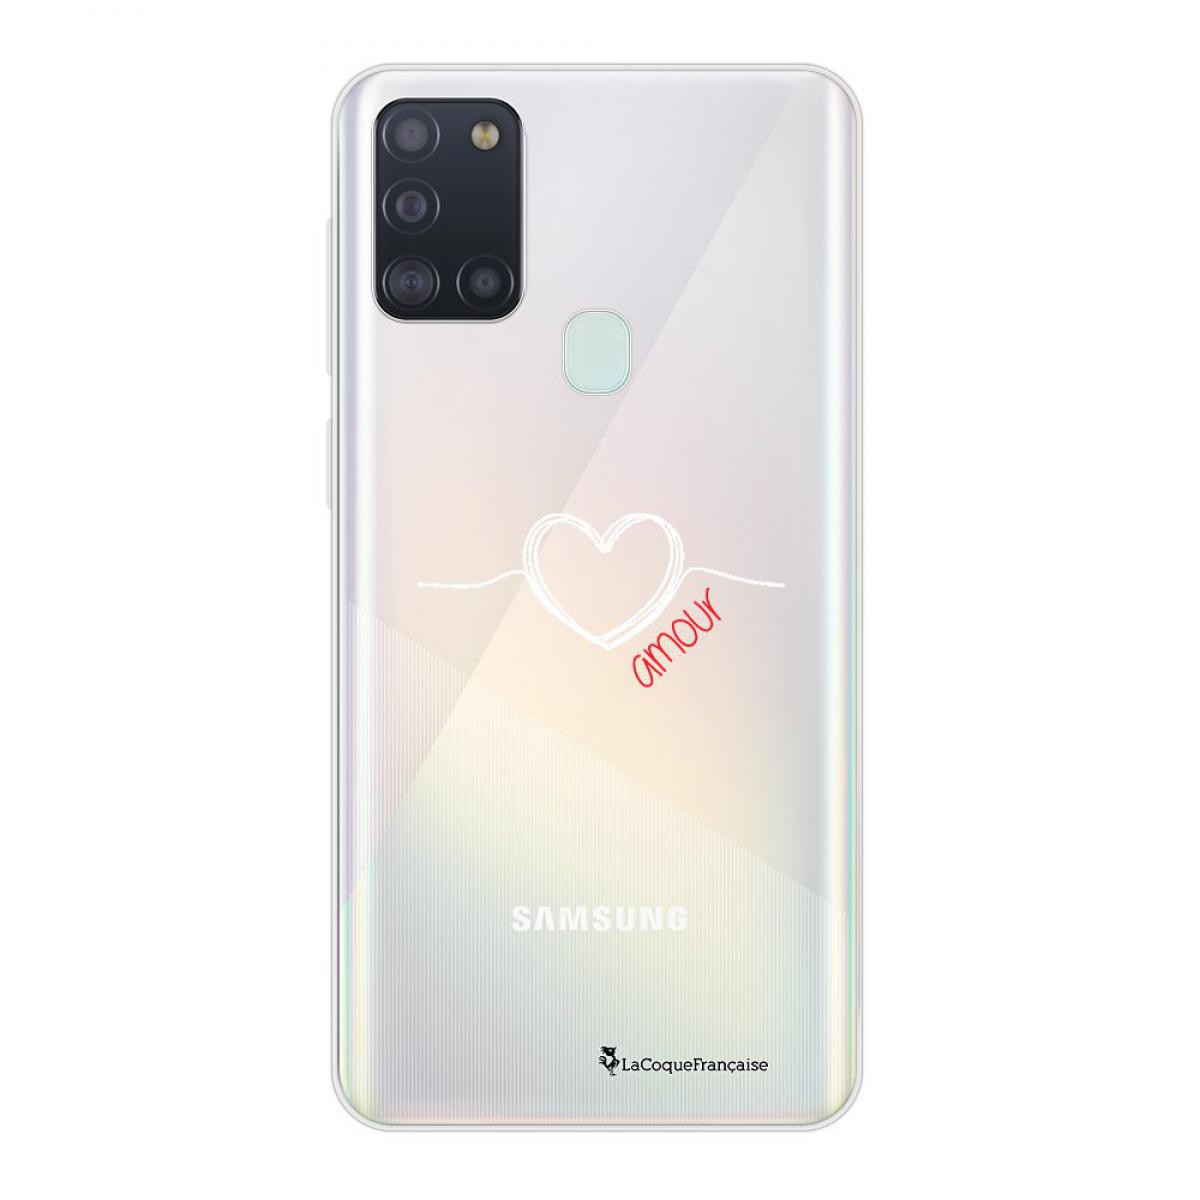 La Coque Francaise - Coque Samsung Galaxy A21S souple transparente Coeur Blanc Amour Motif Ecriture Tendance La Coque Francaise - Coque, étui smartphone